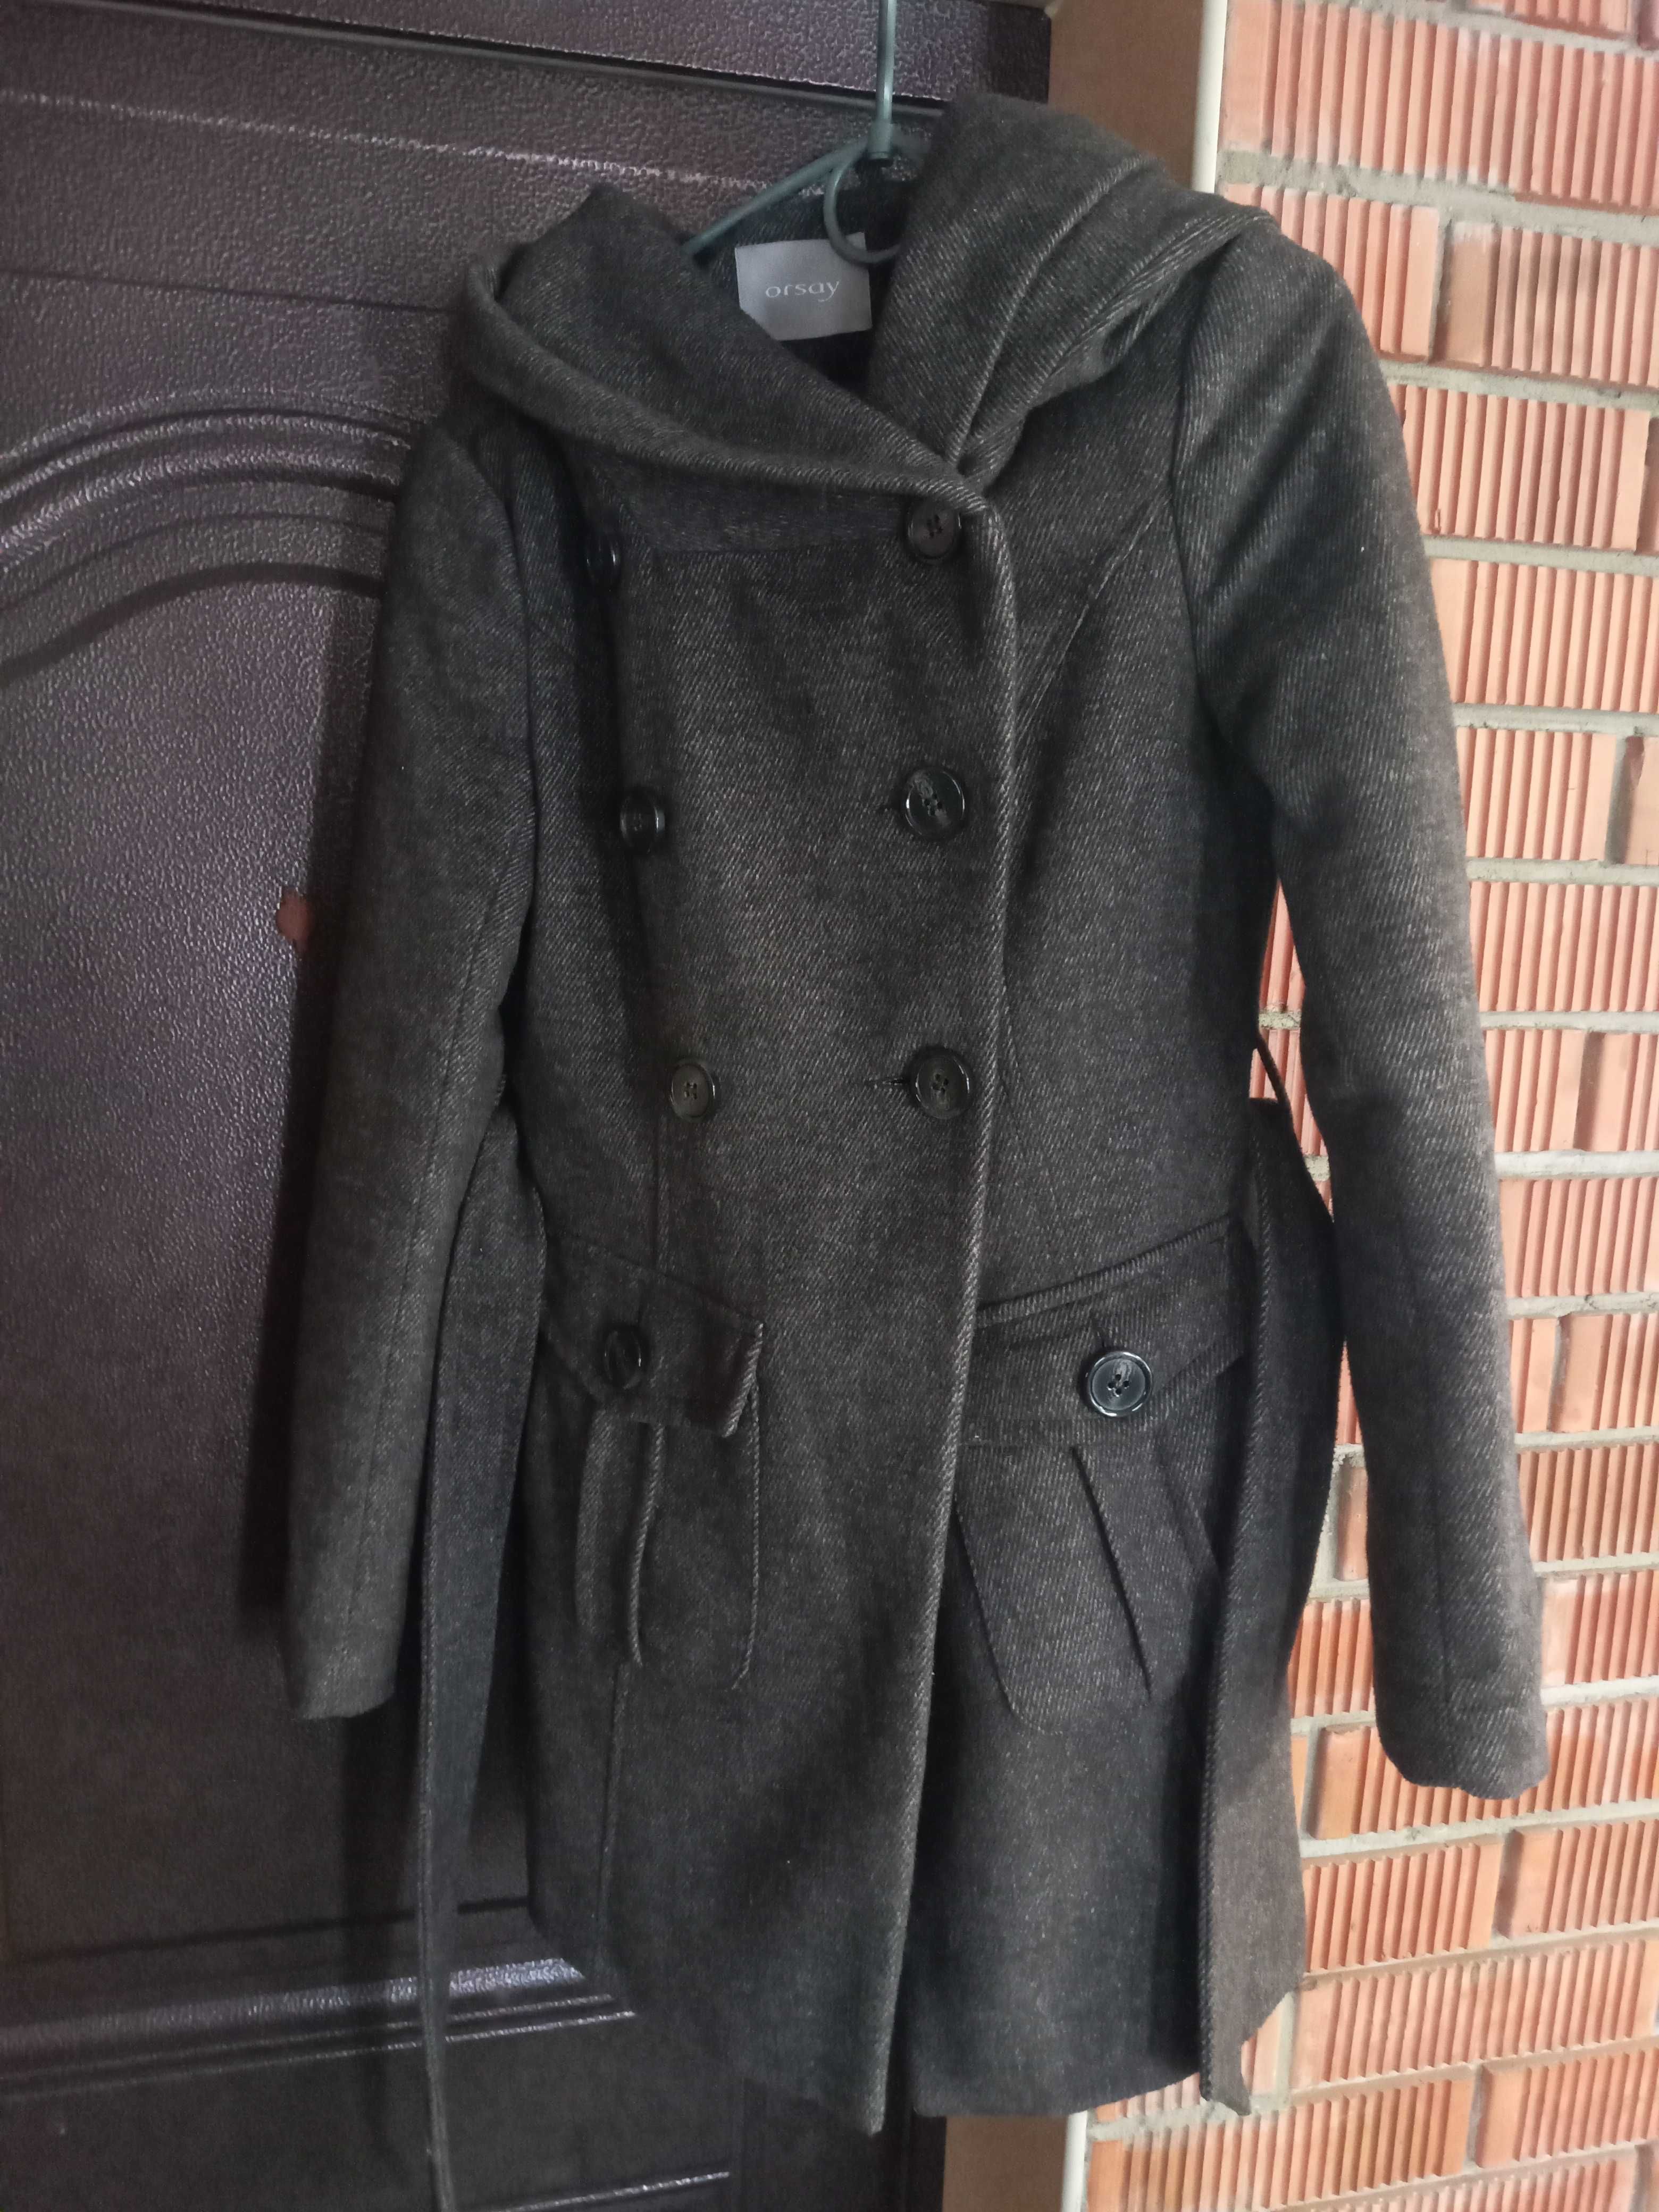 Прдам пальто женское раэмер 34 evro